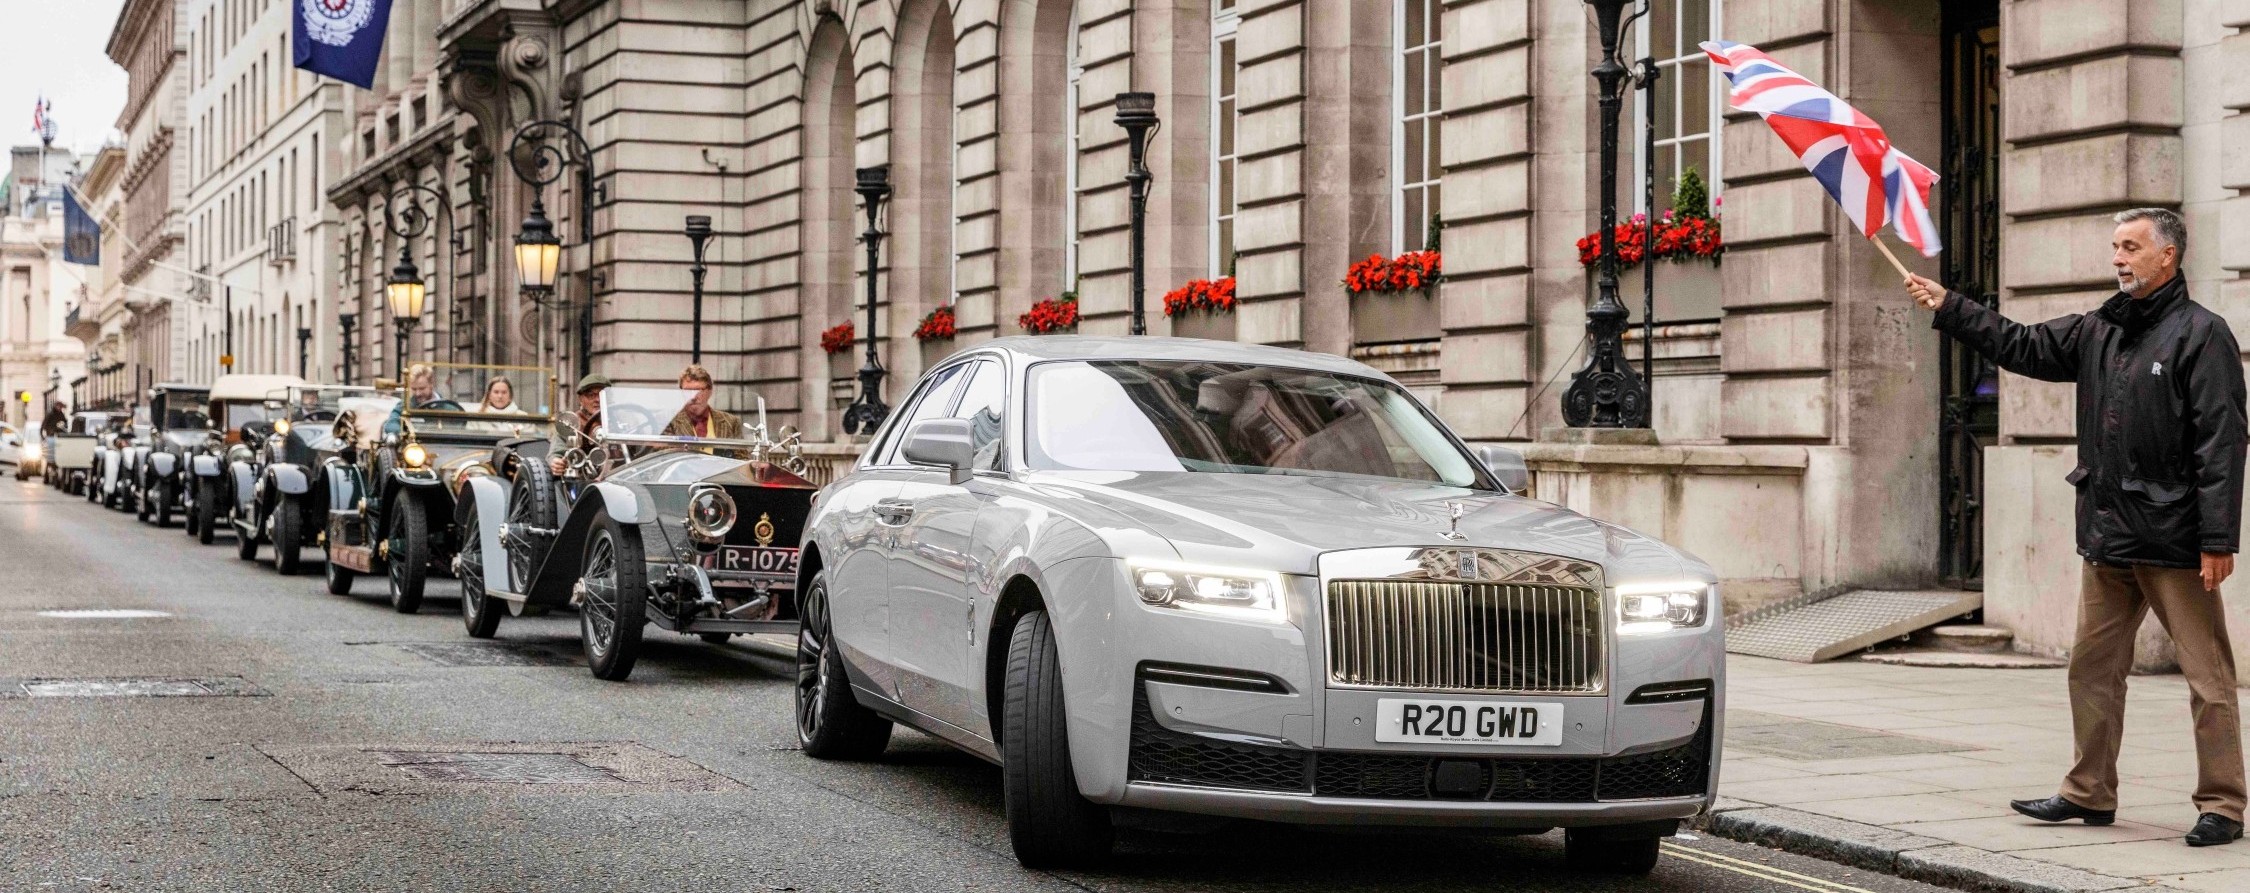 Rolls-Royce Ghost tái hiện chuyến đi lịch sử London – Edinburgh sau 110 năm